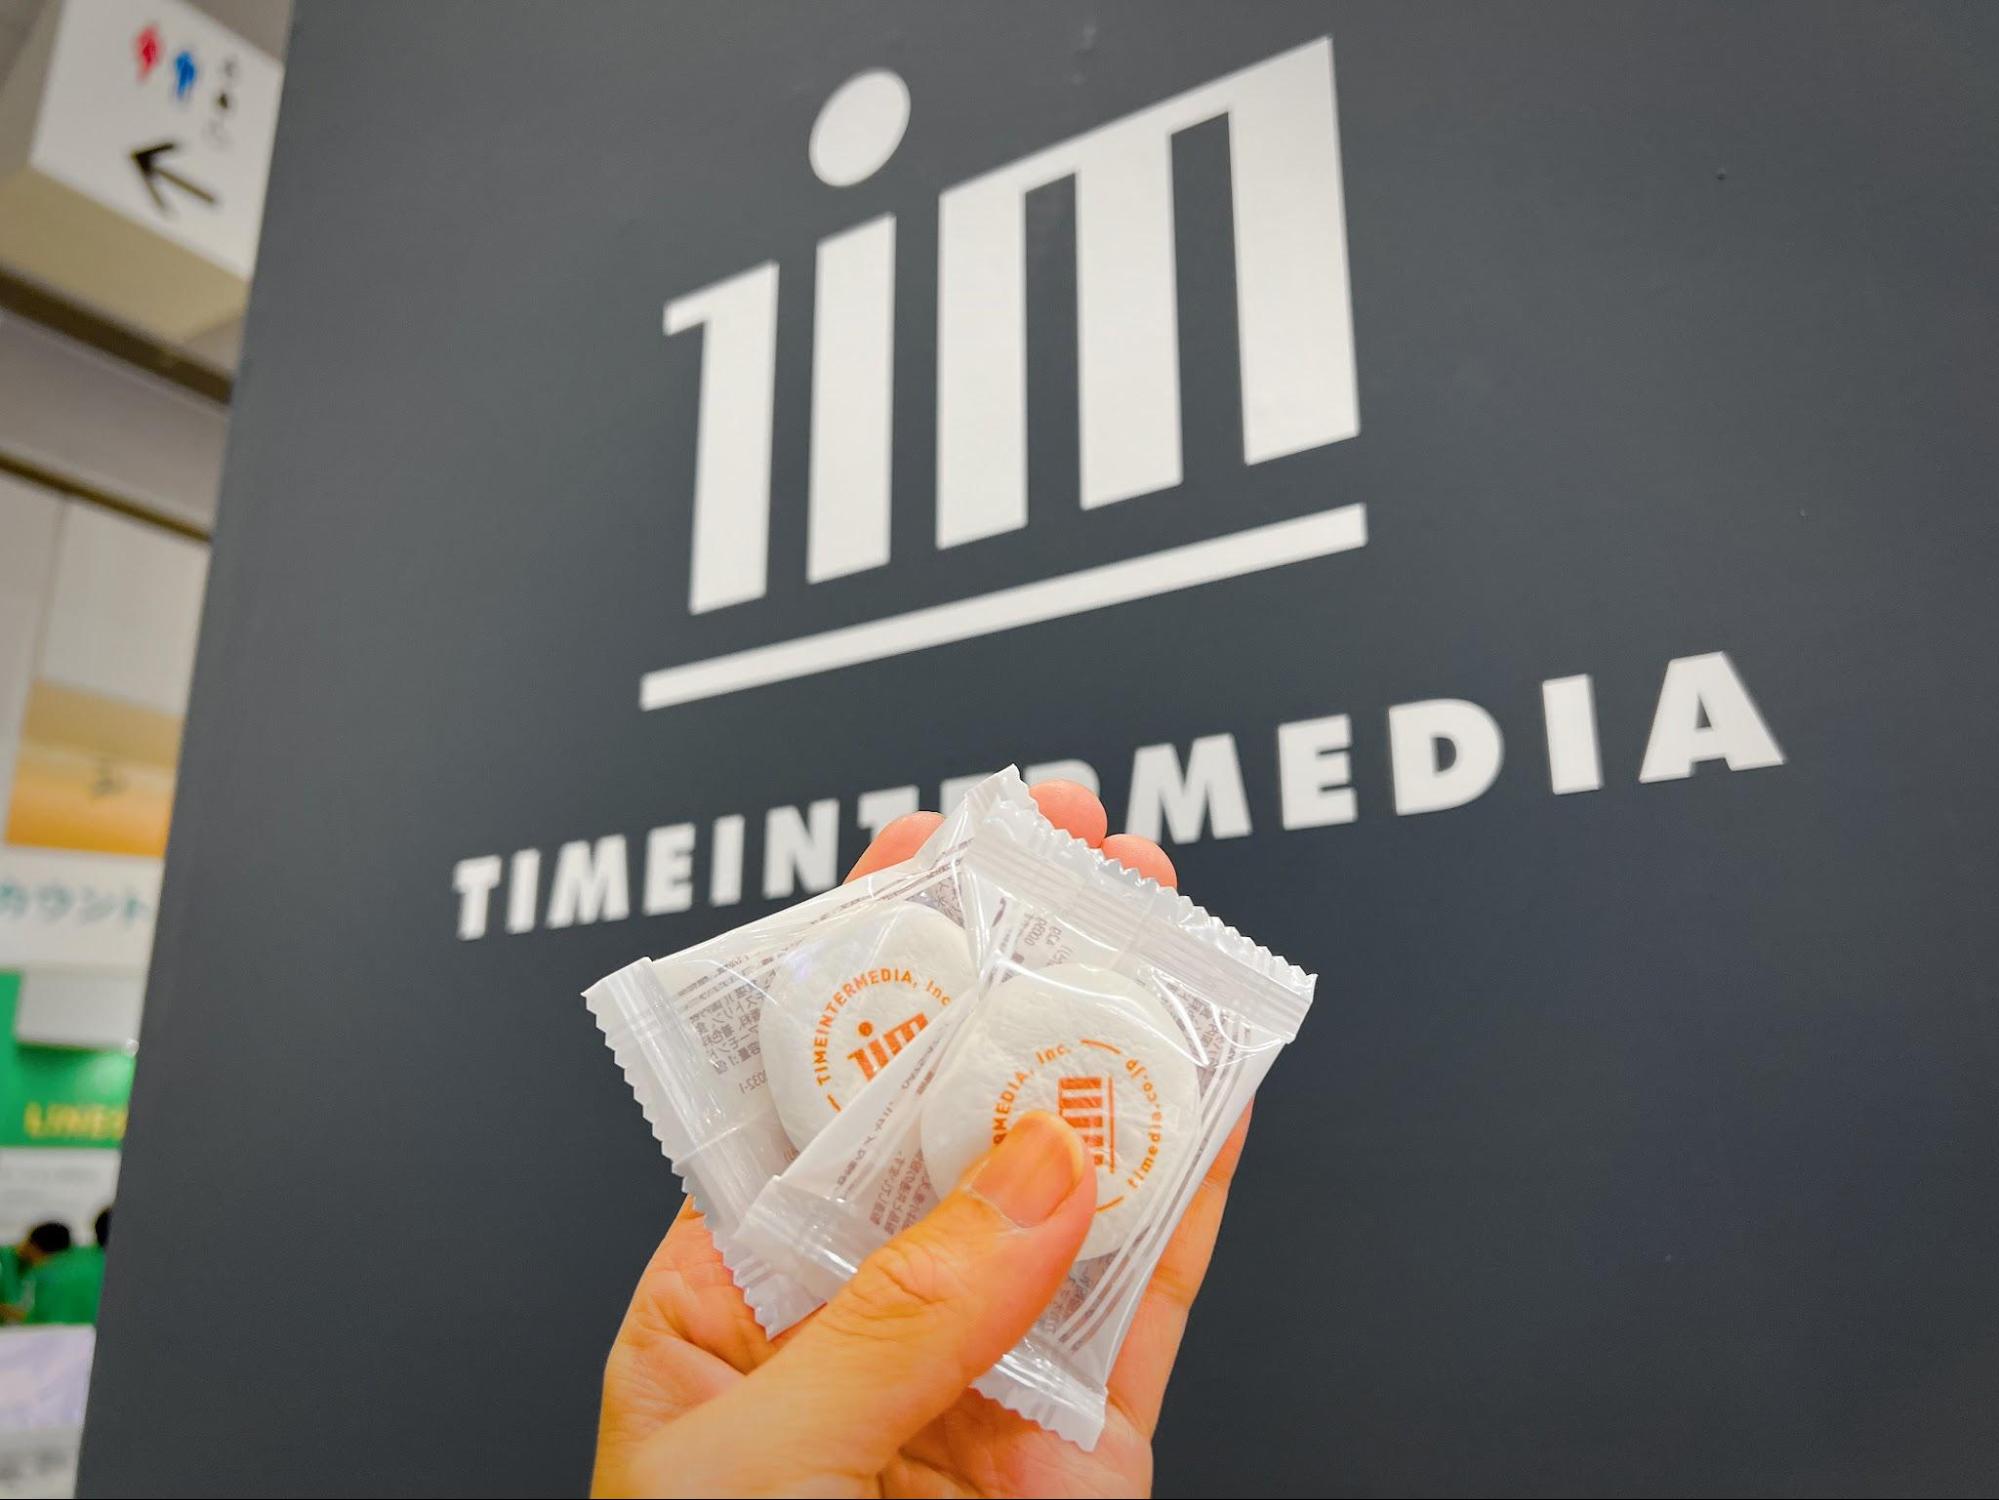 タイムインターメディア（TIM）のオレンジ色ロゴが可食印刷された白いマシュマロの写真